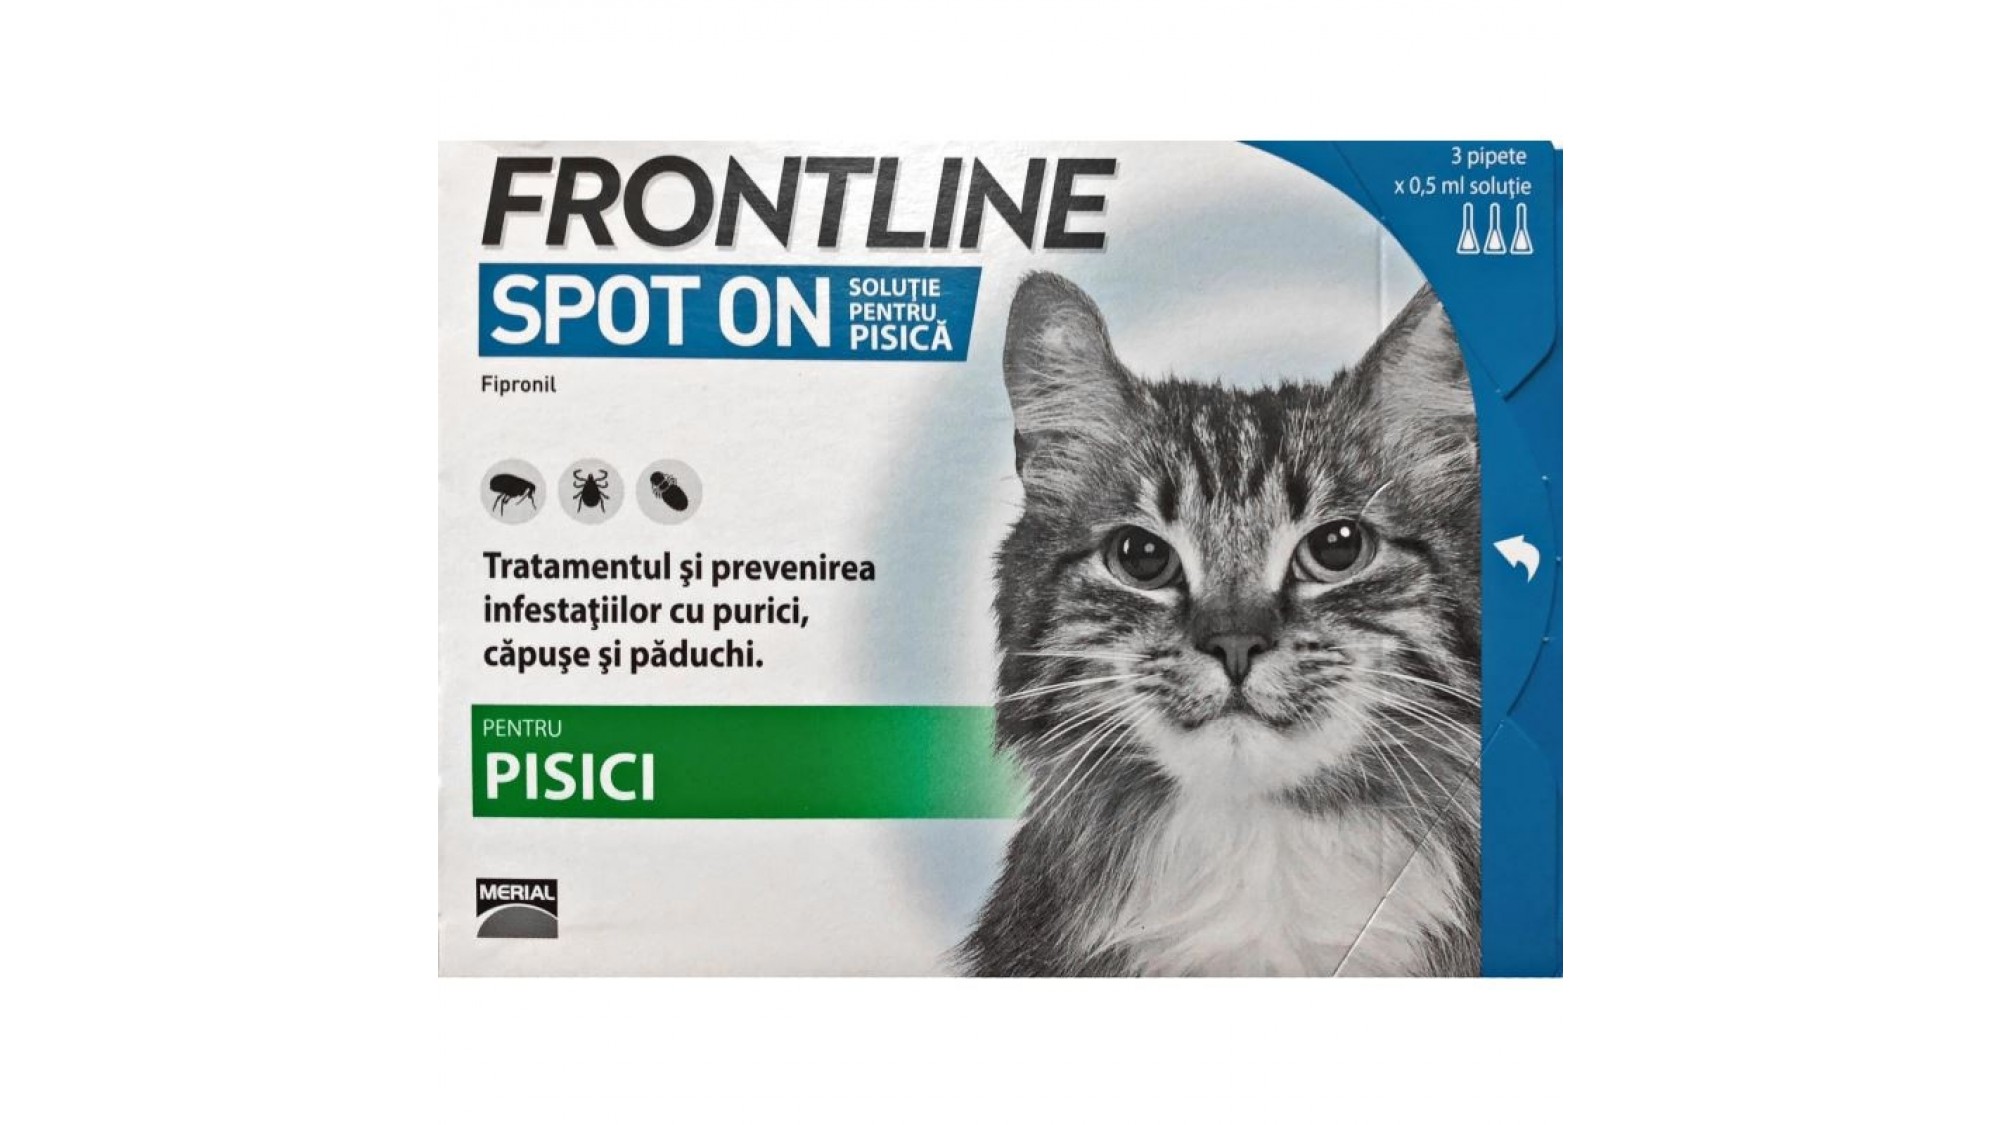 Frontline Spot On Pisica 1 Pipeta Merial